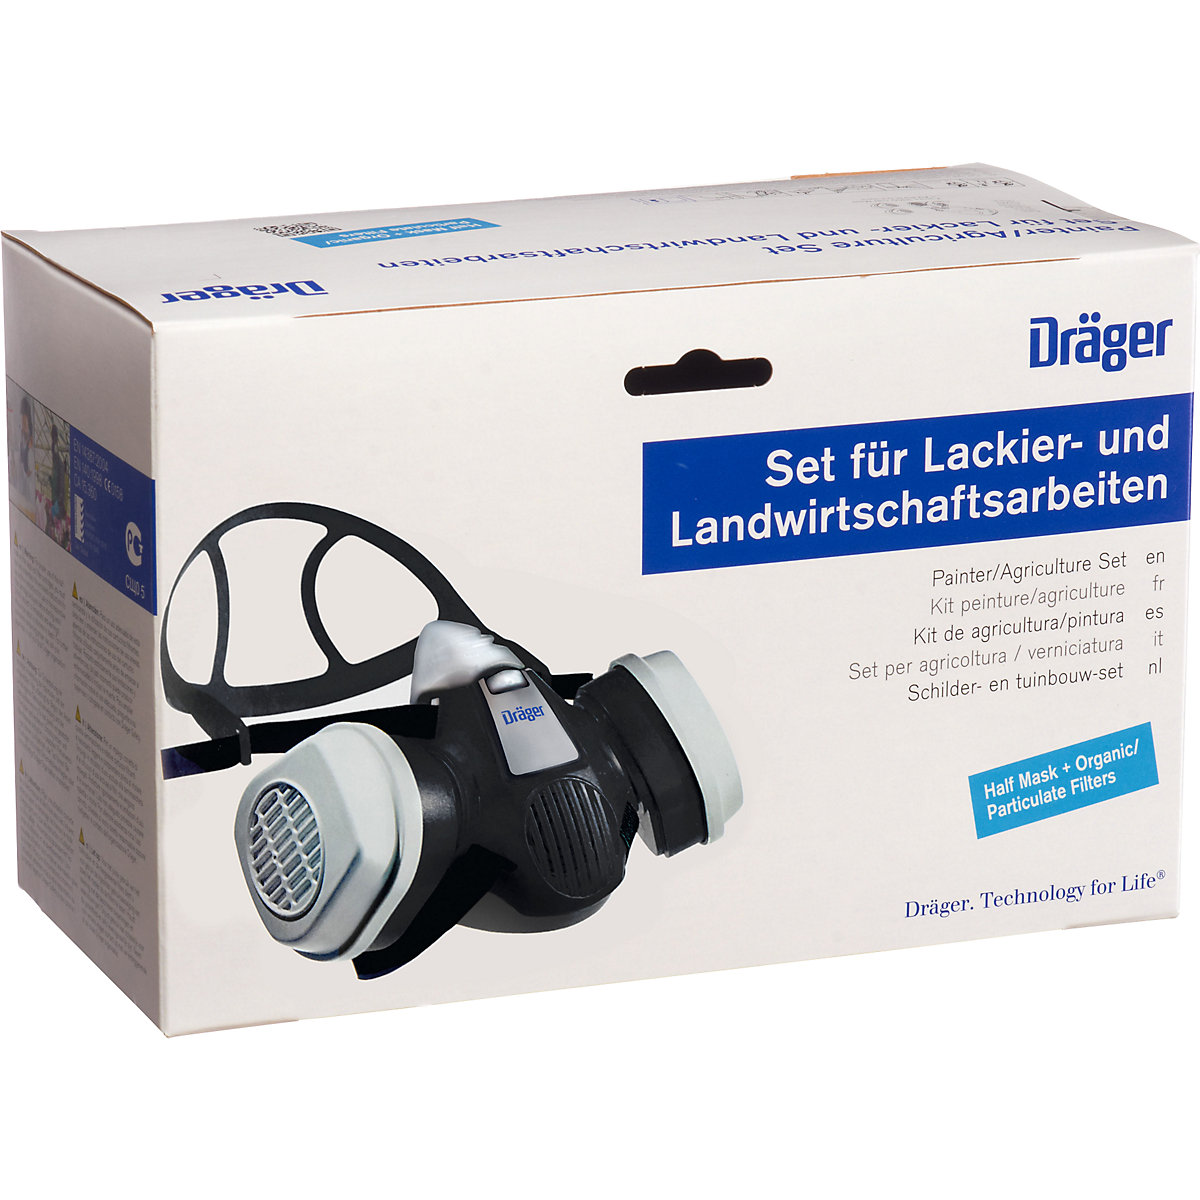 Zestaw złożony z półmaski X-plore® 3300 i 2 filtrów do prac lakierniczych – Dräger (Zdjęcie produktu 2)-1